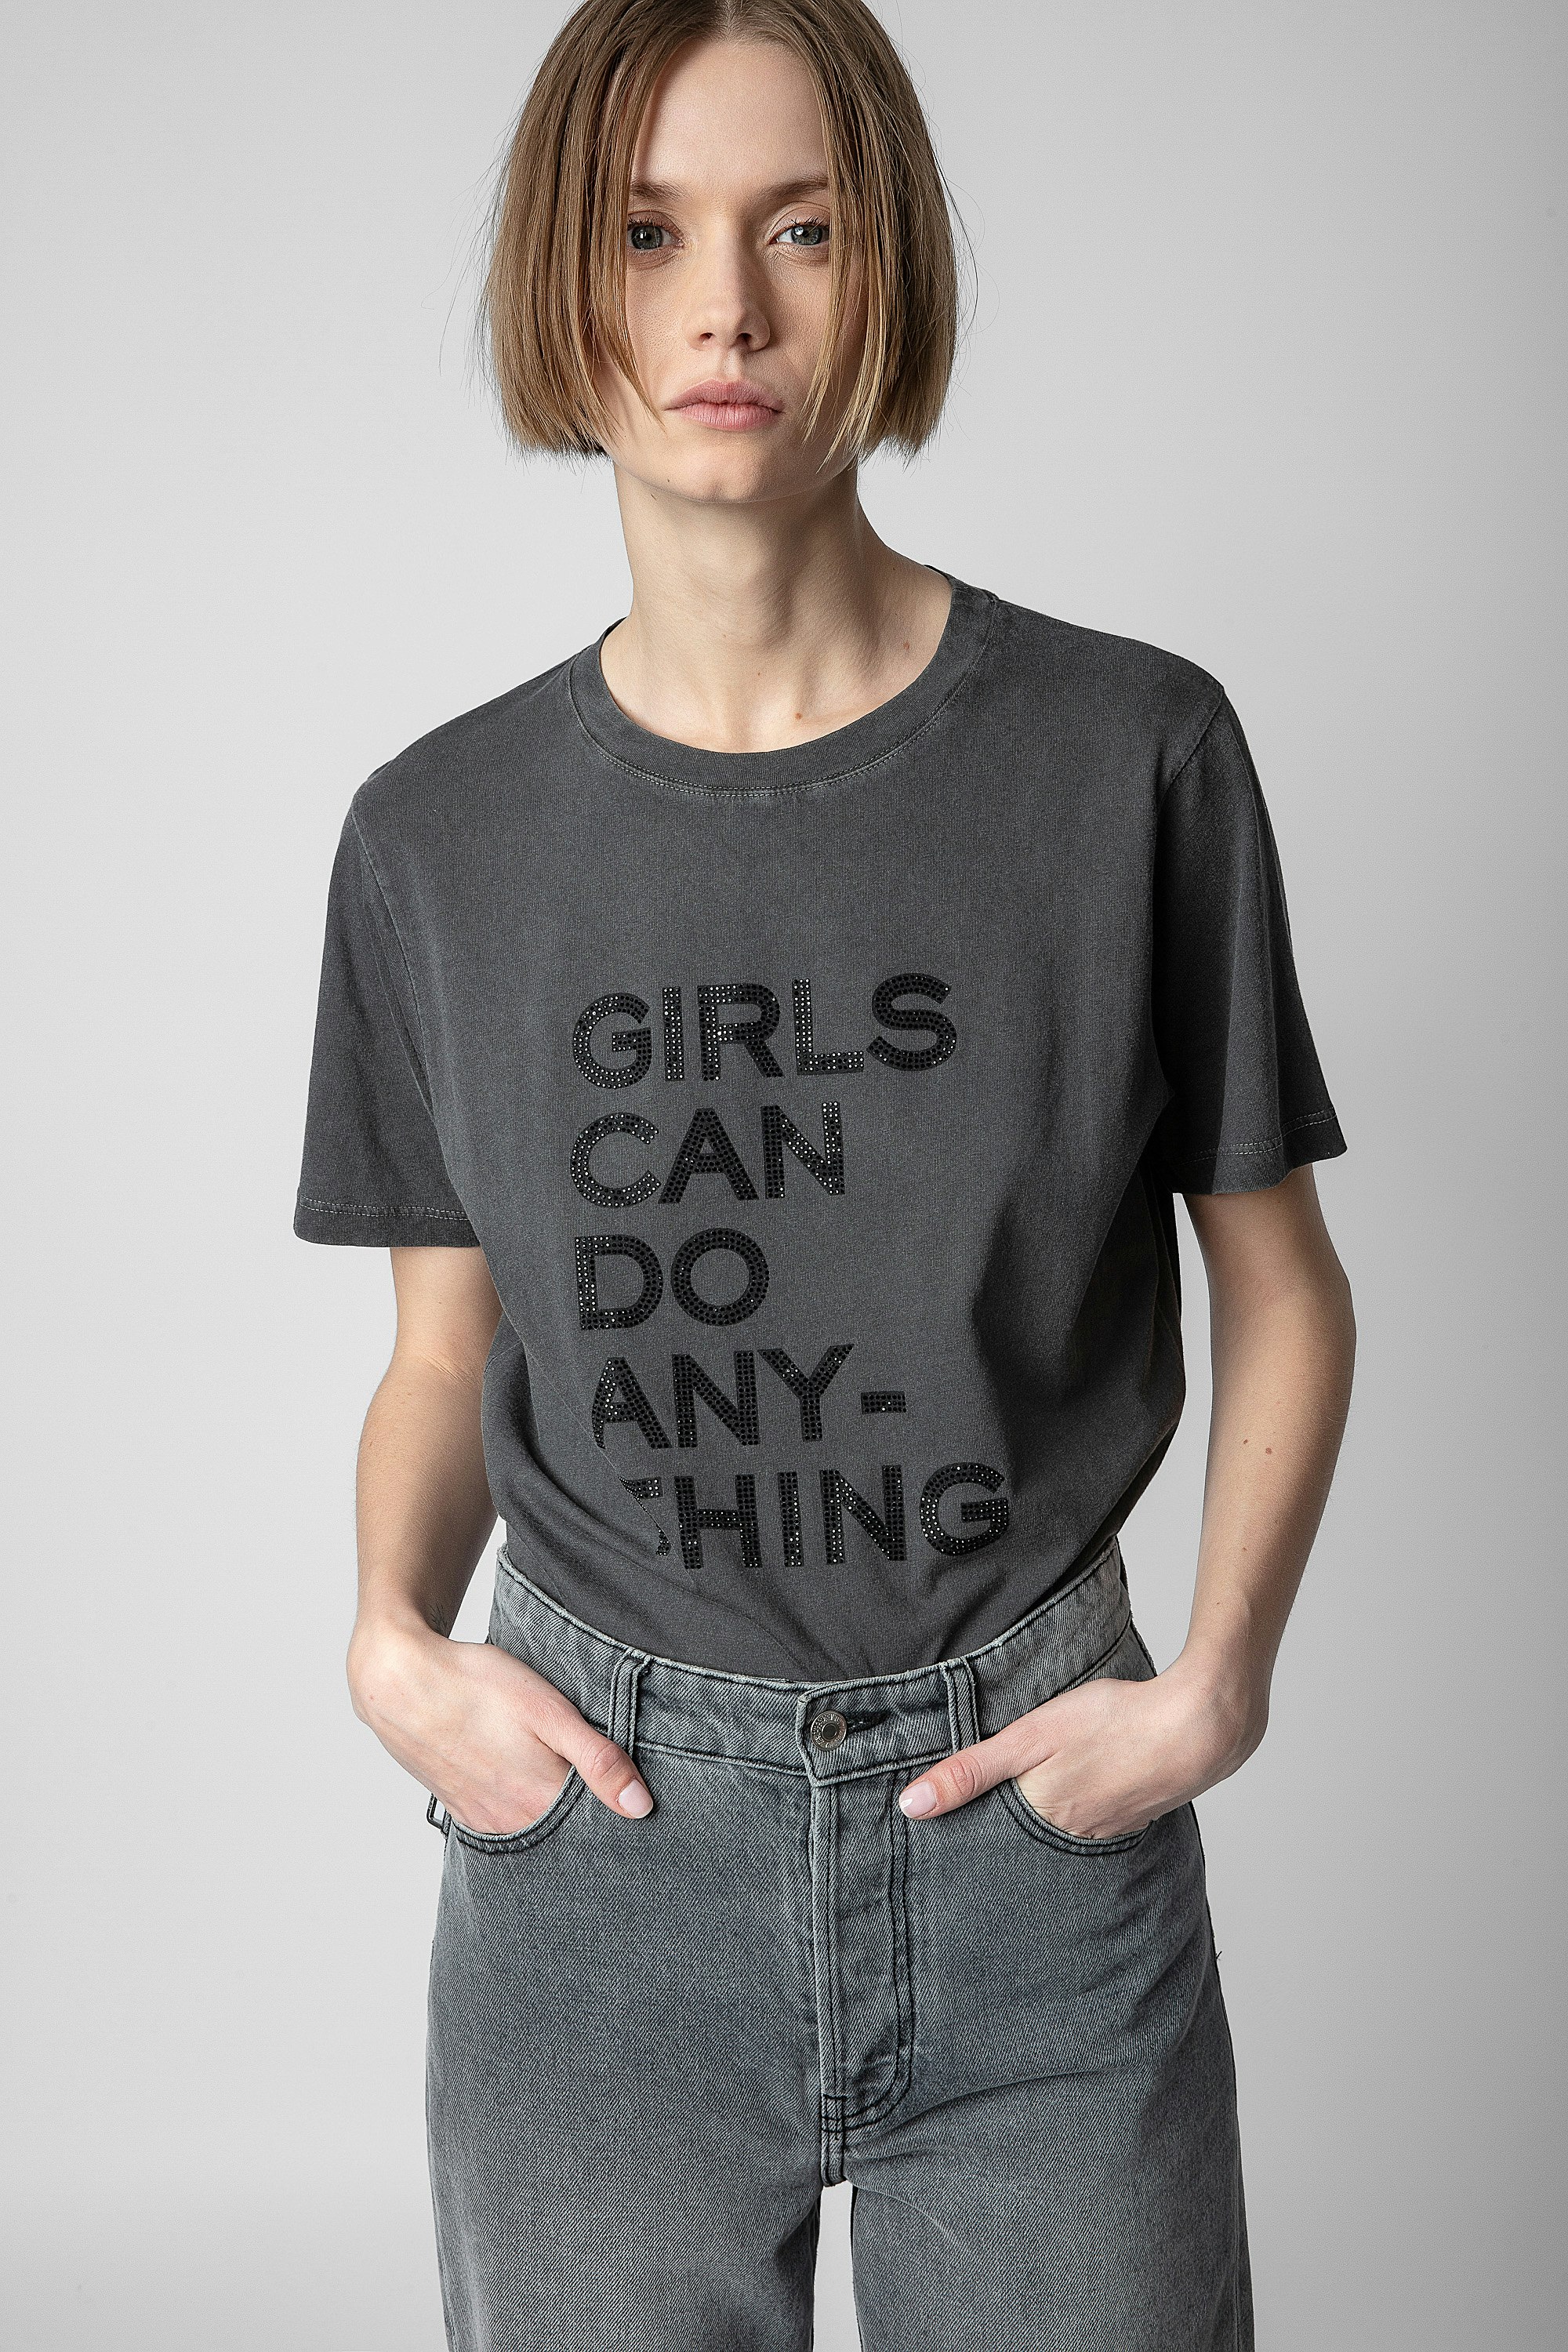 Camiseta Bella - Camiseta gris de algodón para mujer con mensaje «Girls can do anything» engastado con strass